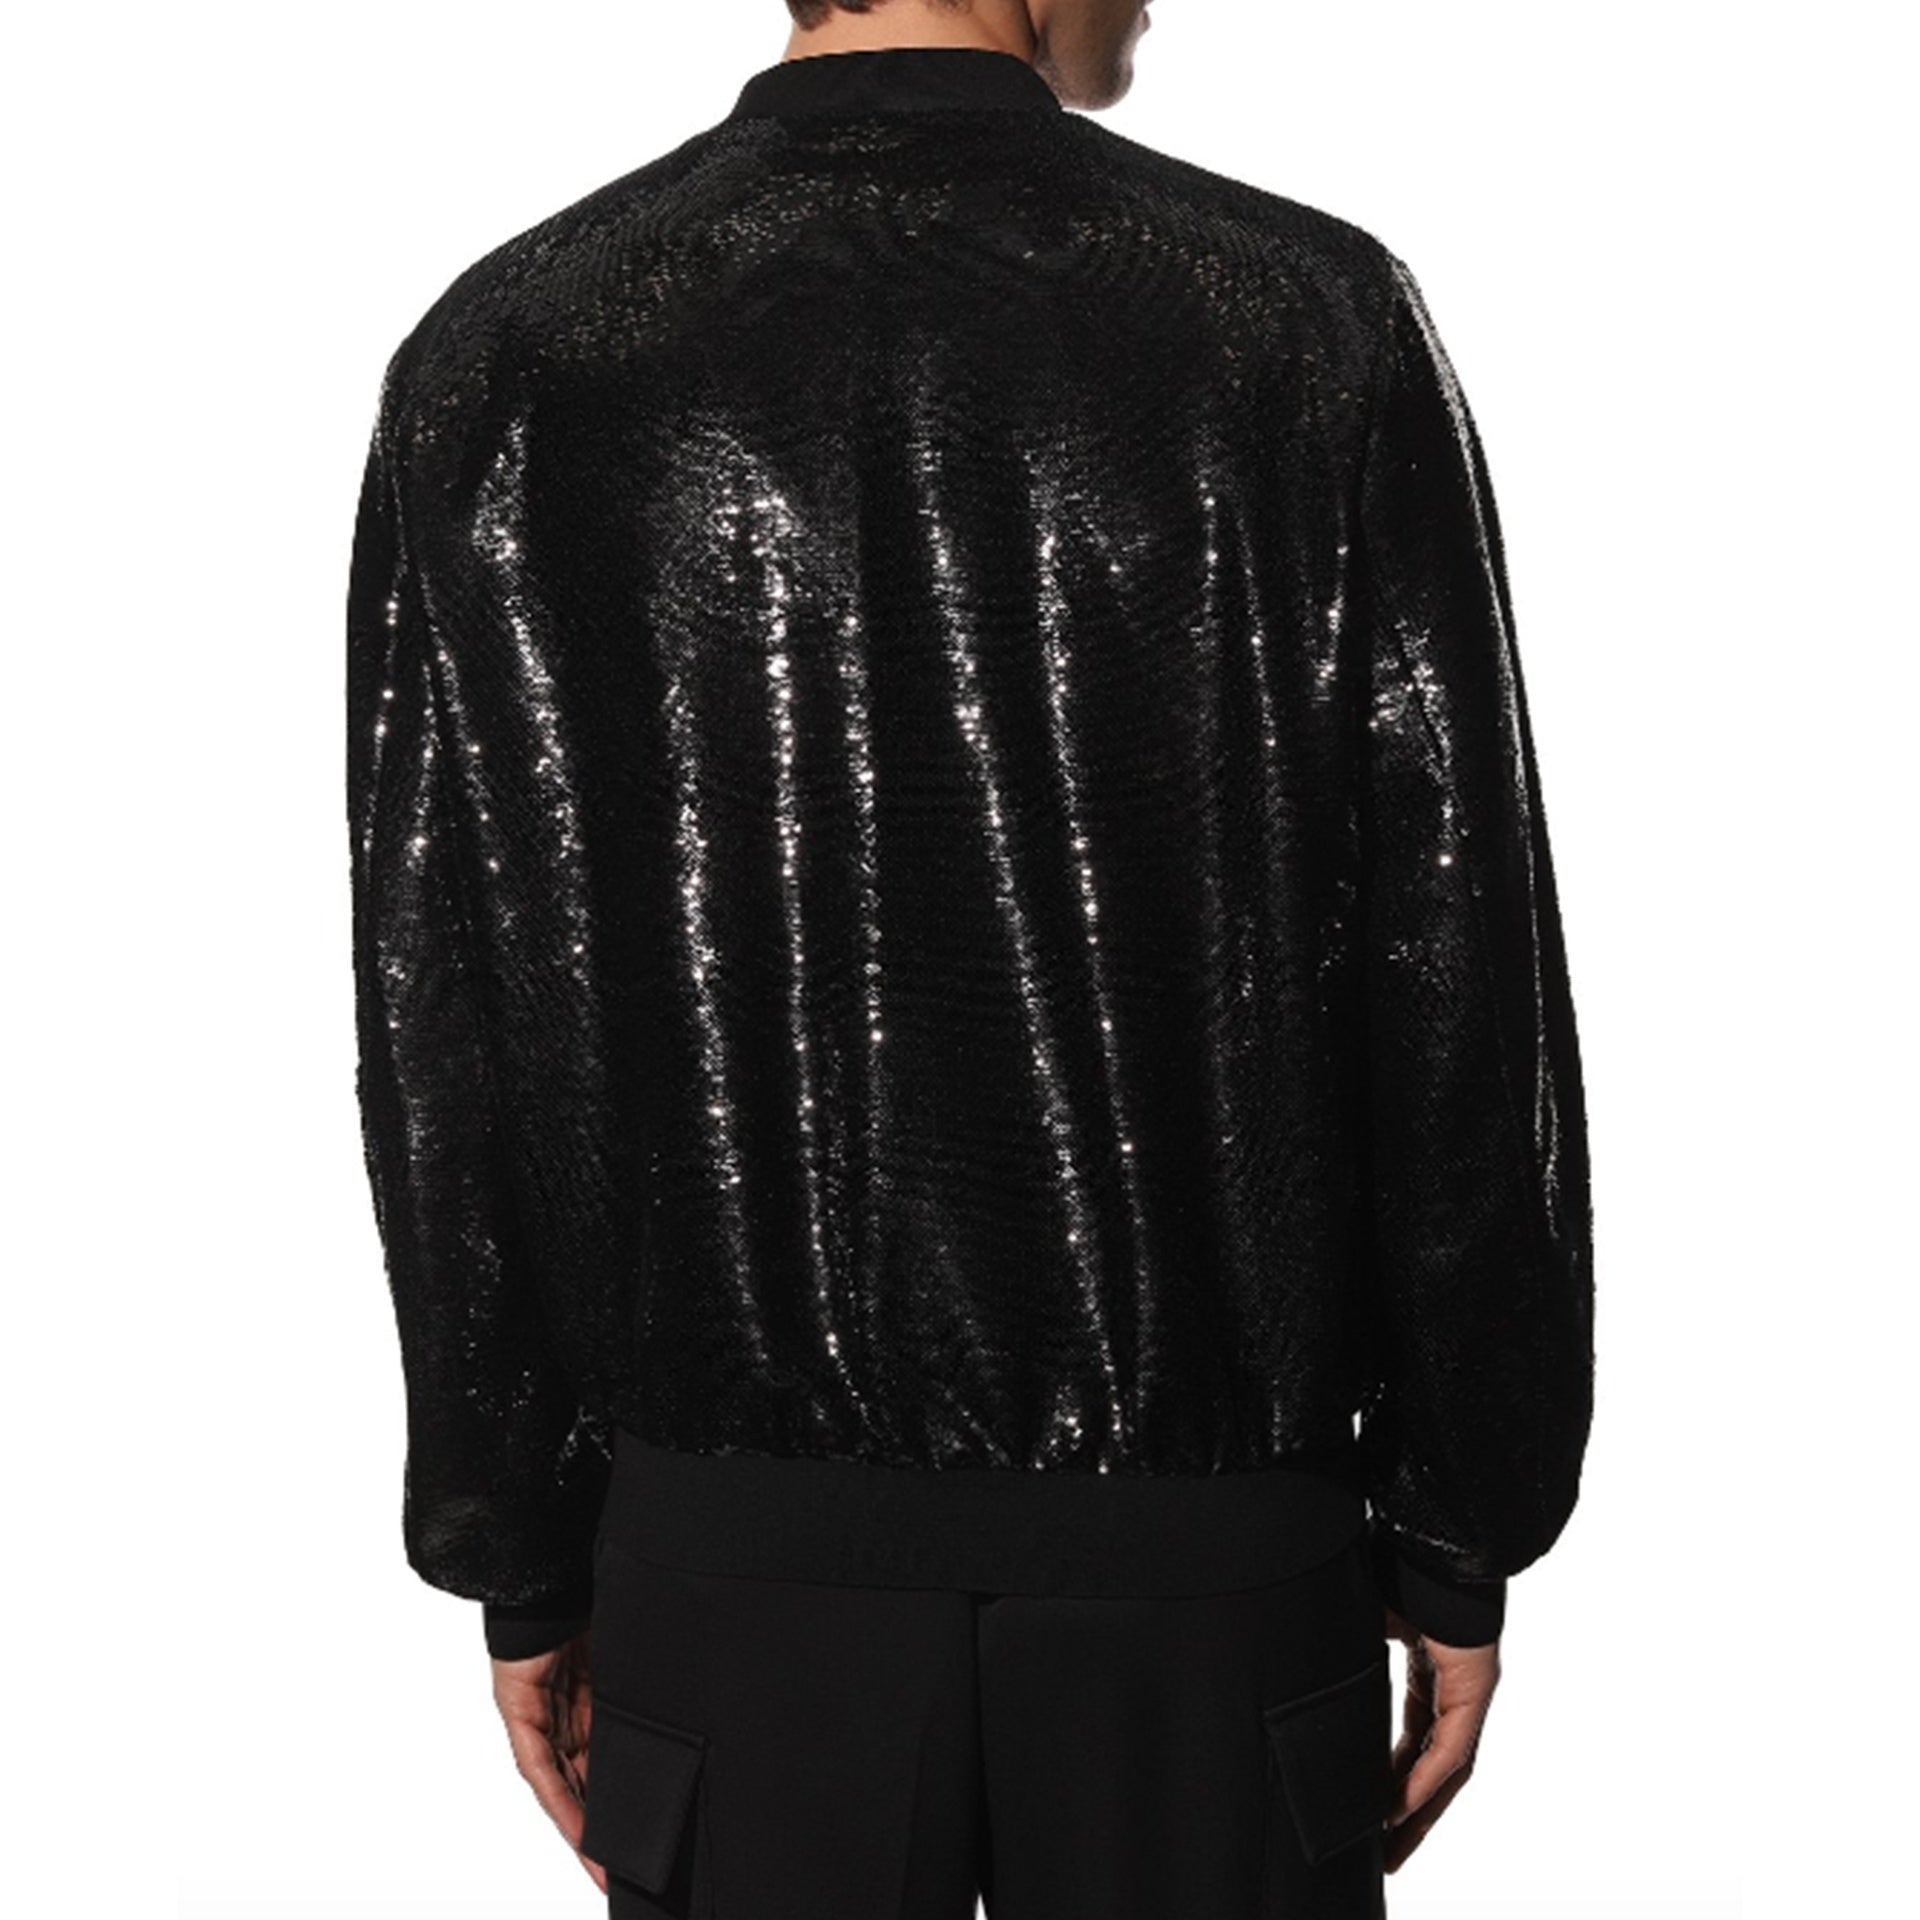 PRADA-Outlet-Sale-Prada Sequin-Embellished Bomber Jacket-MEN CLOTHING-BLACK-M-ARCHIVIST